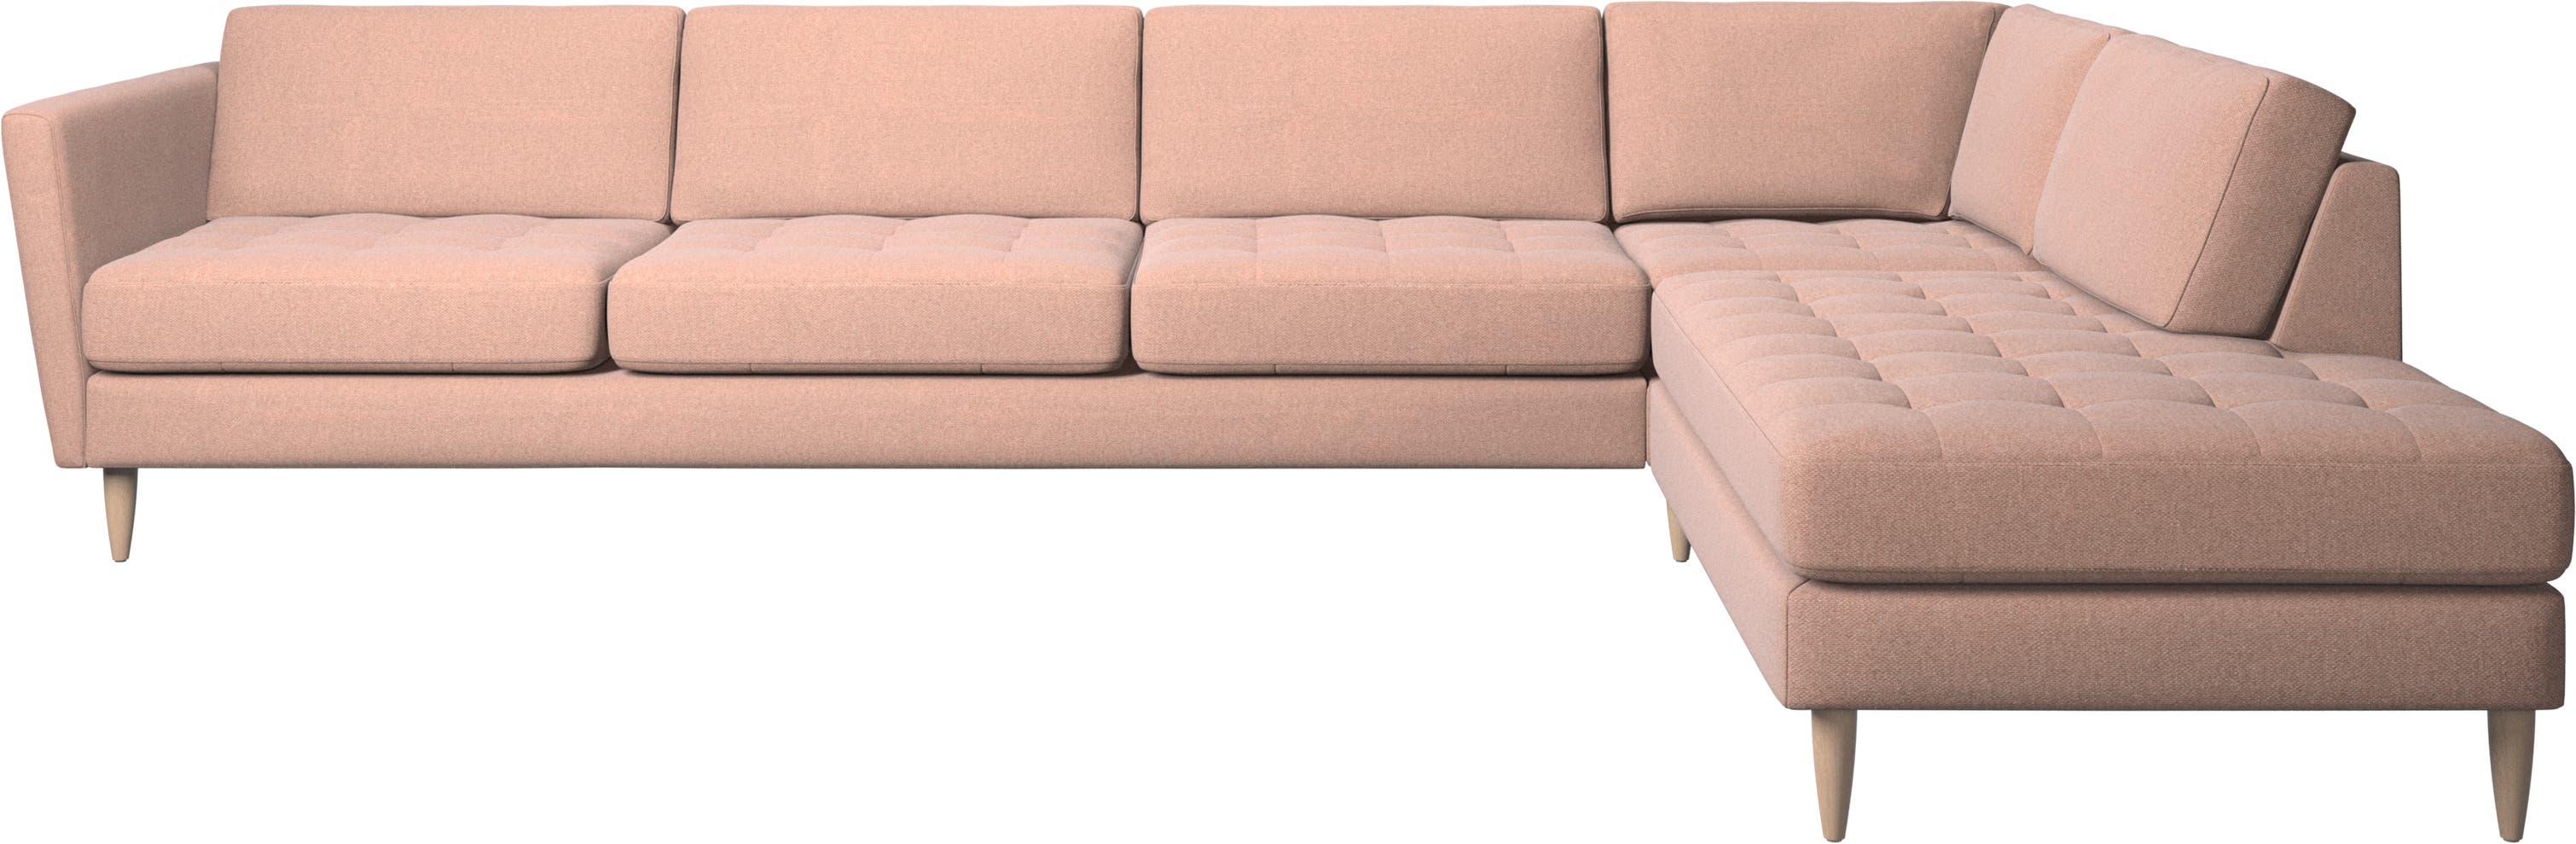 γωνιακός καναπές Osaka με μονάδα lounging, καπιτονέ μαξιλάρι καθίσματος